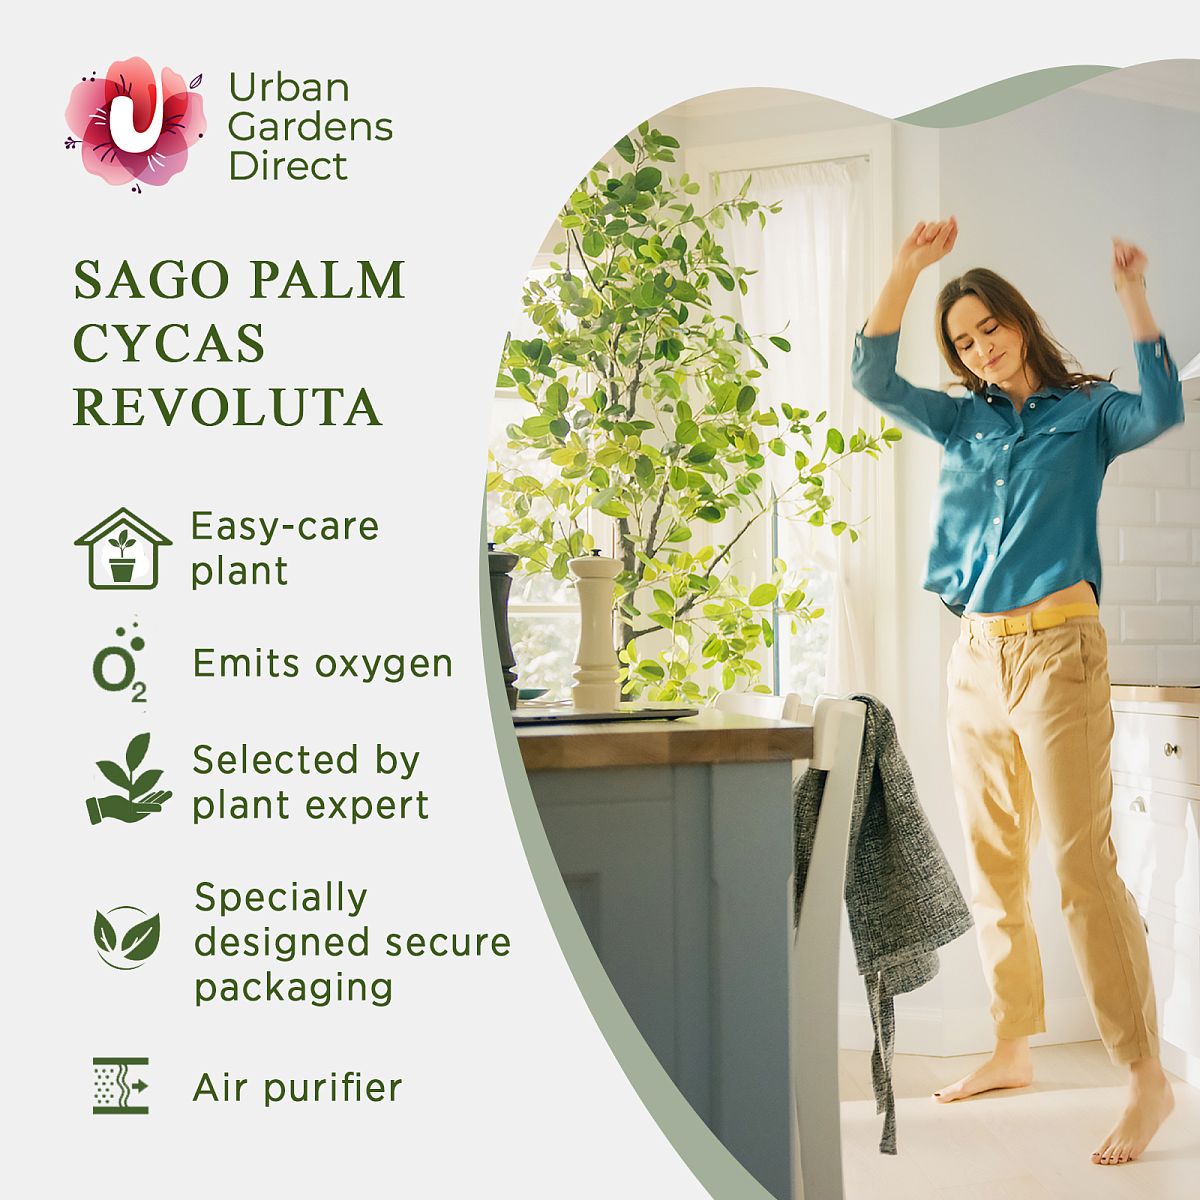 Sago Palm Cycas revoluta